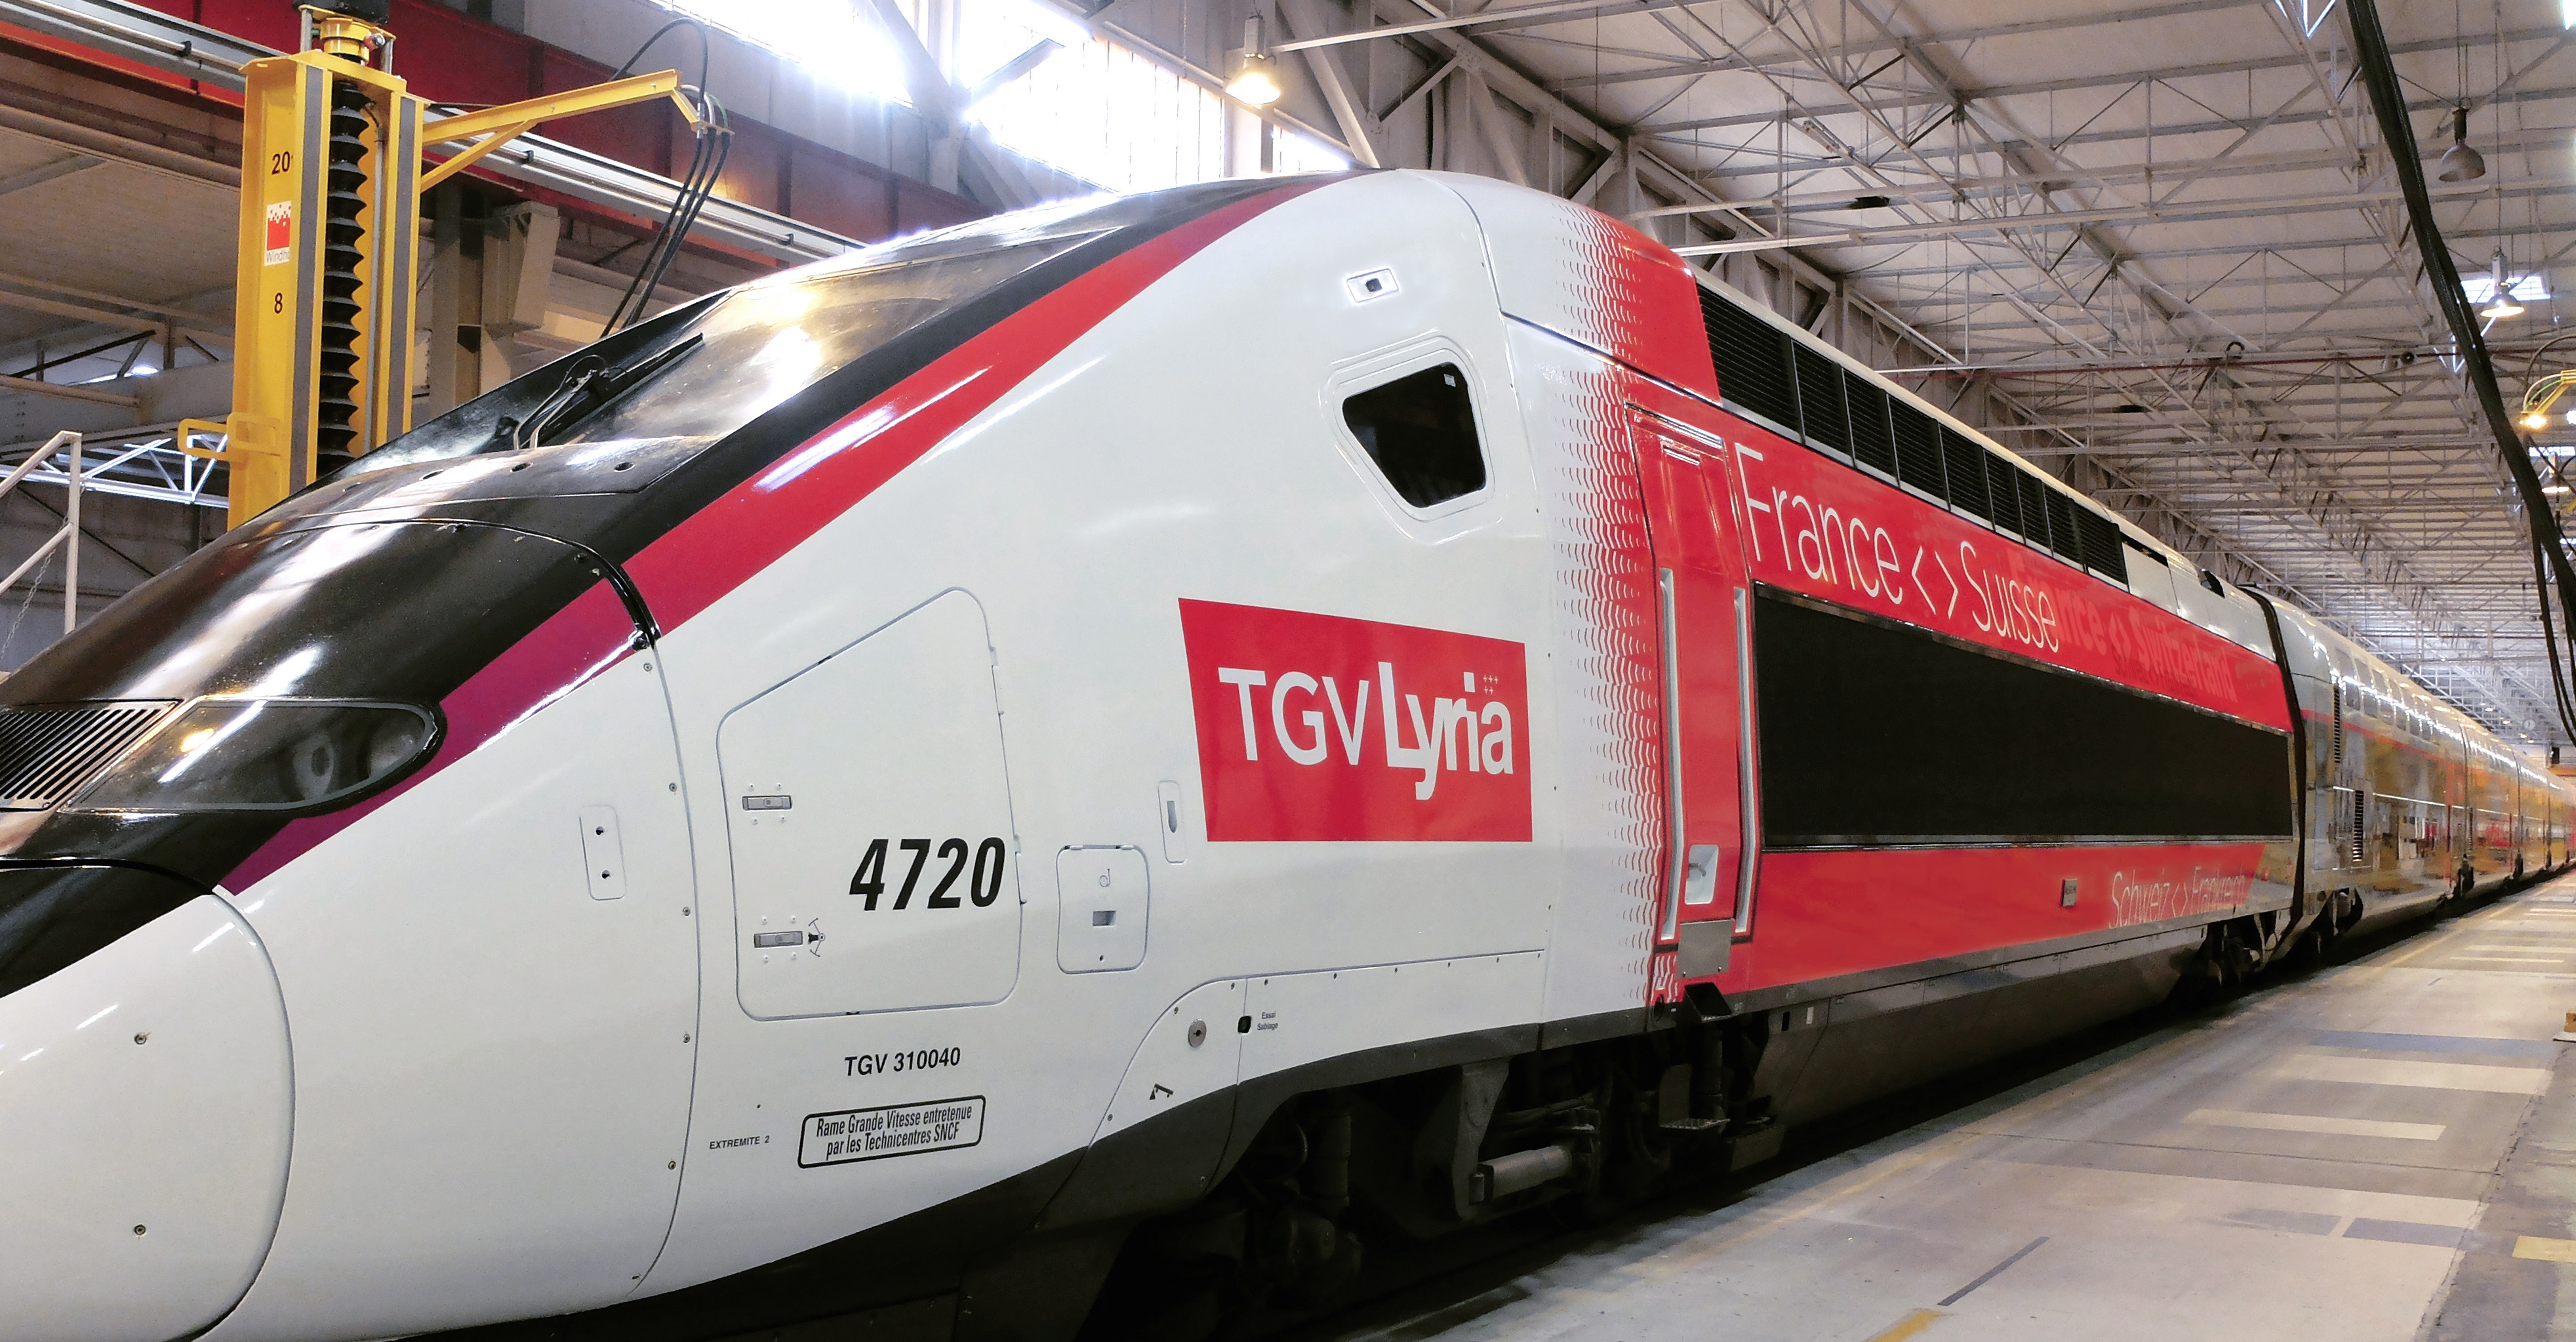 TGV Lyria 2020 nach Paris stark nachgefragt - aboutTravel